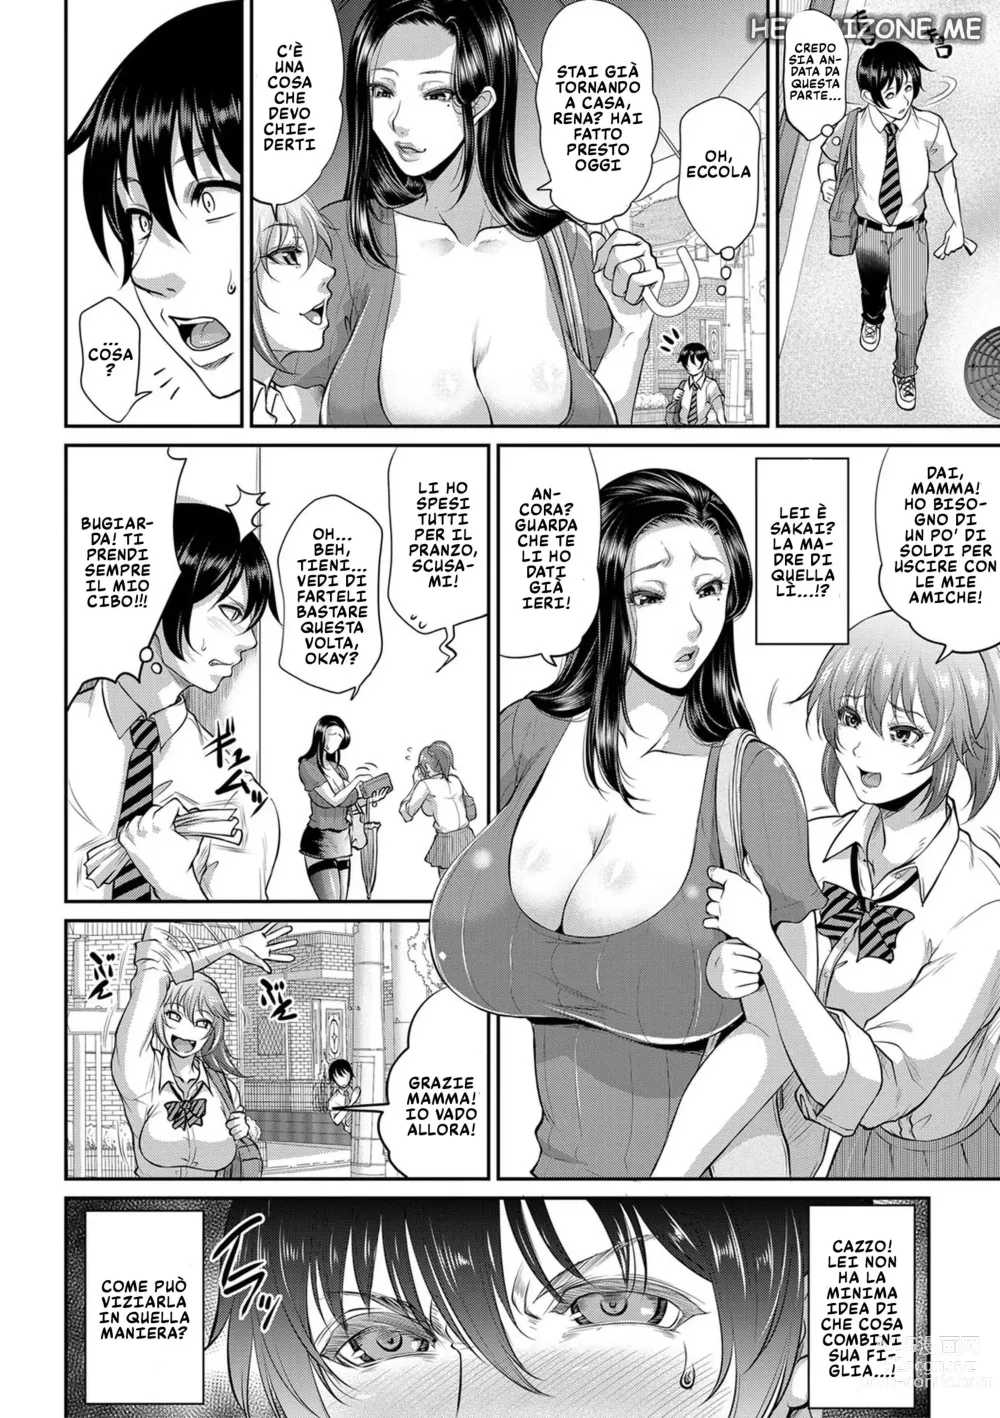 Page 6 of manga Con la Mamma della Mia Bulla